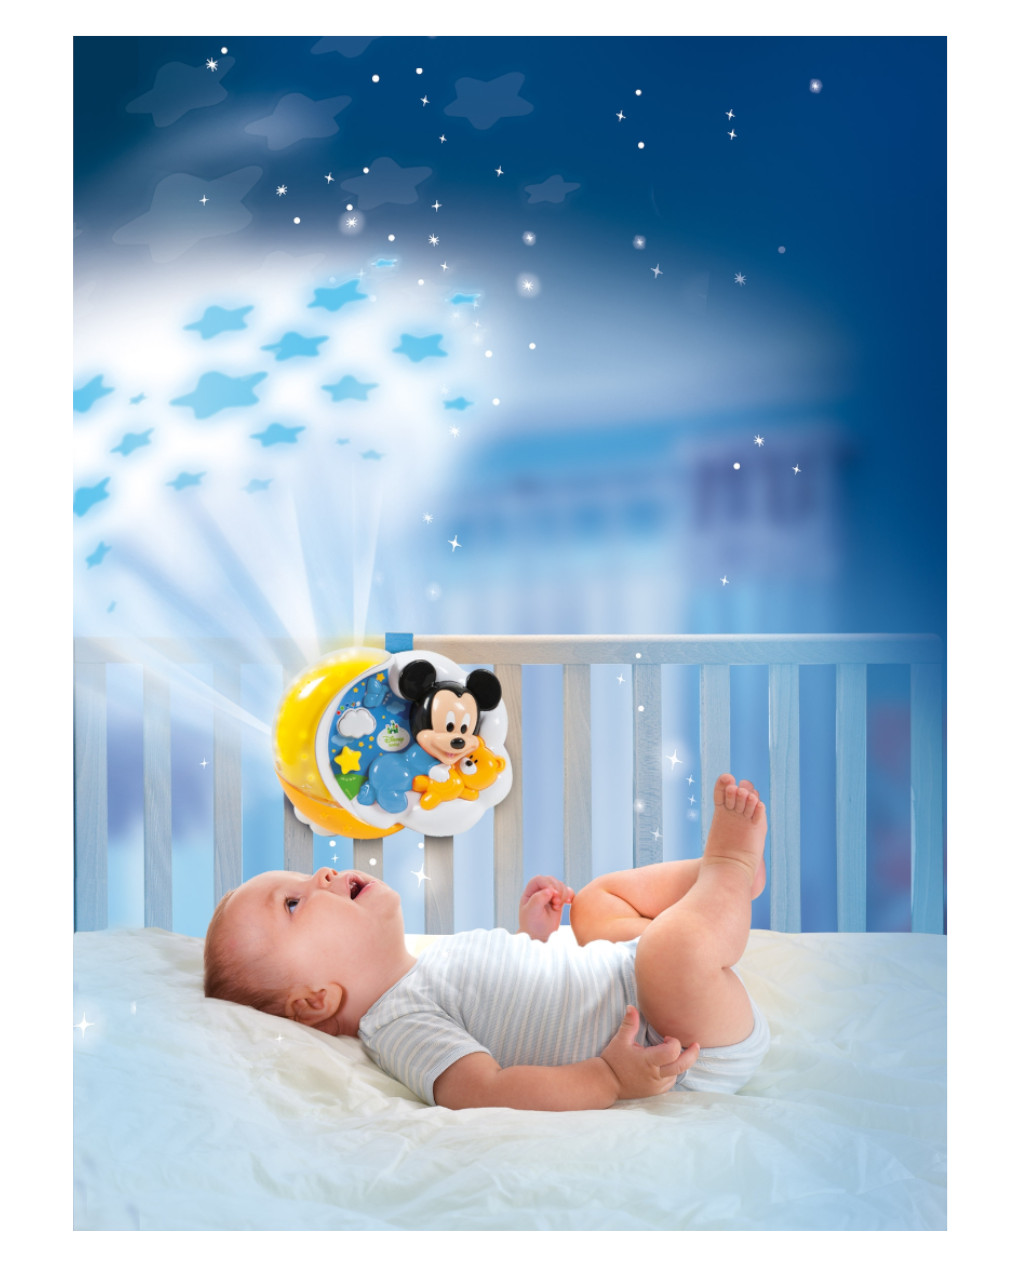 Disney baby - baby mickey proyector estrellas mágicas - Clementoni